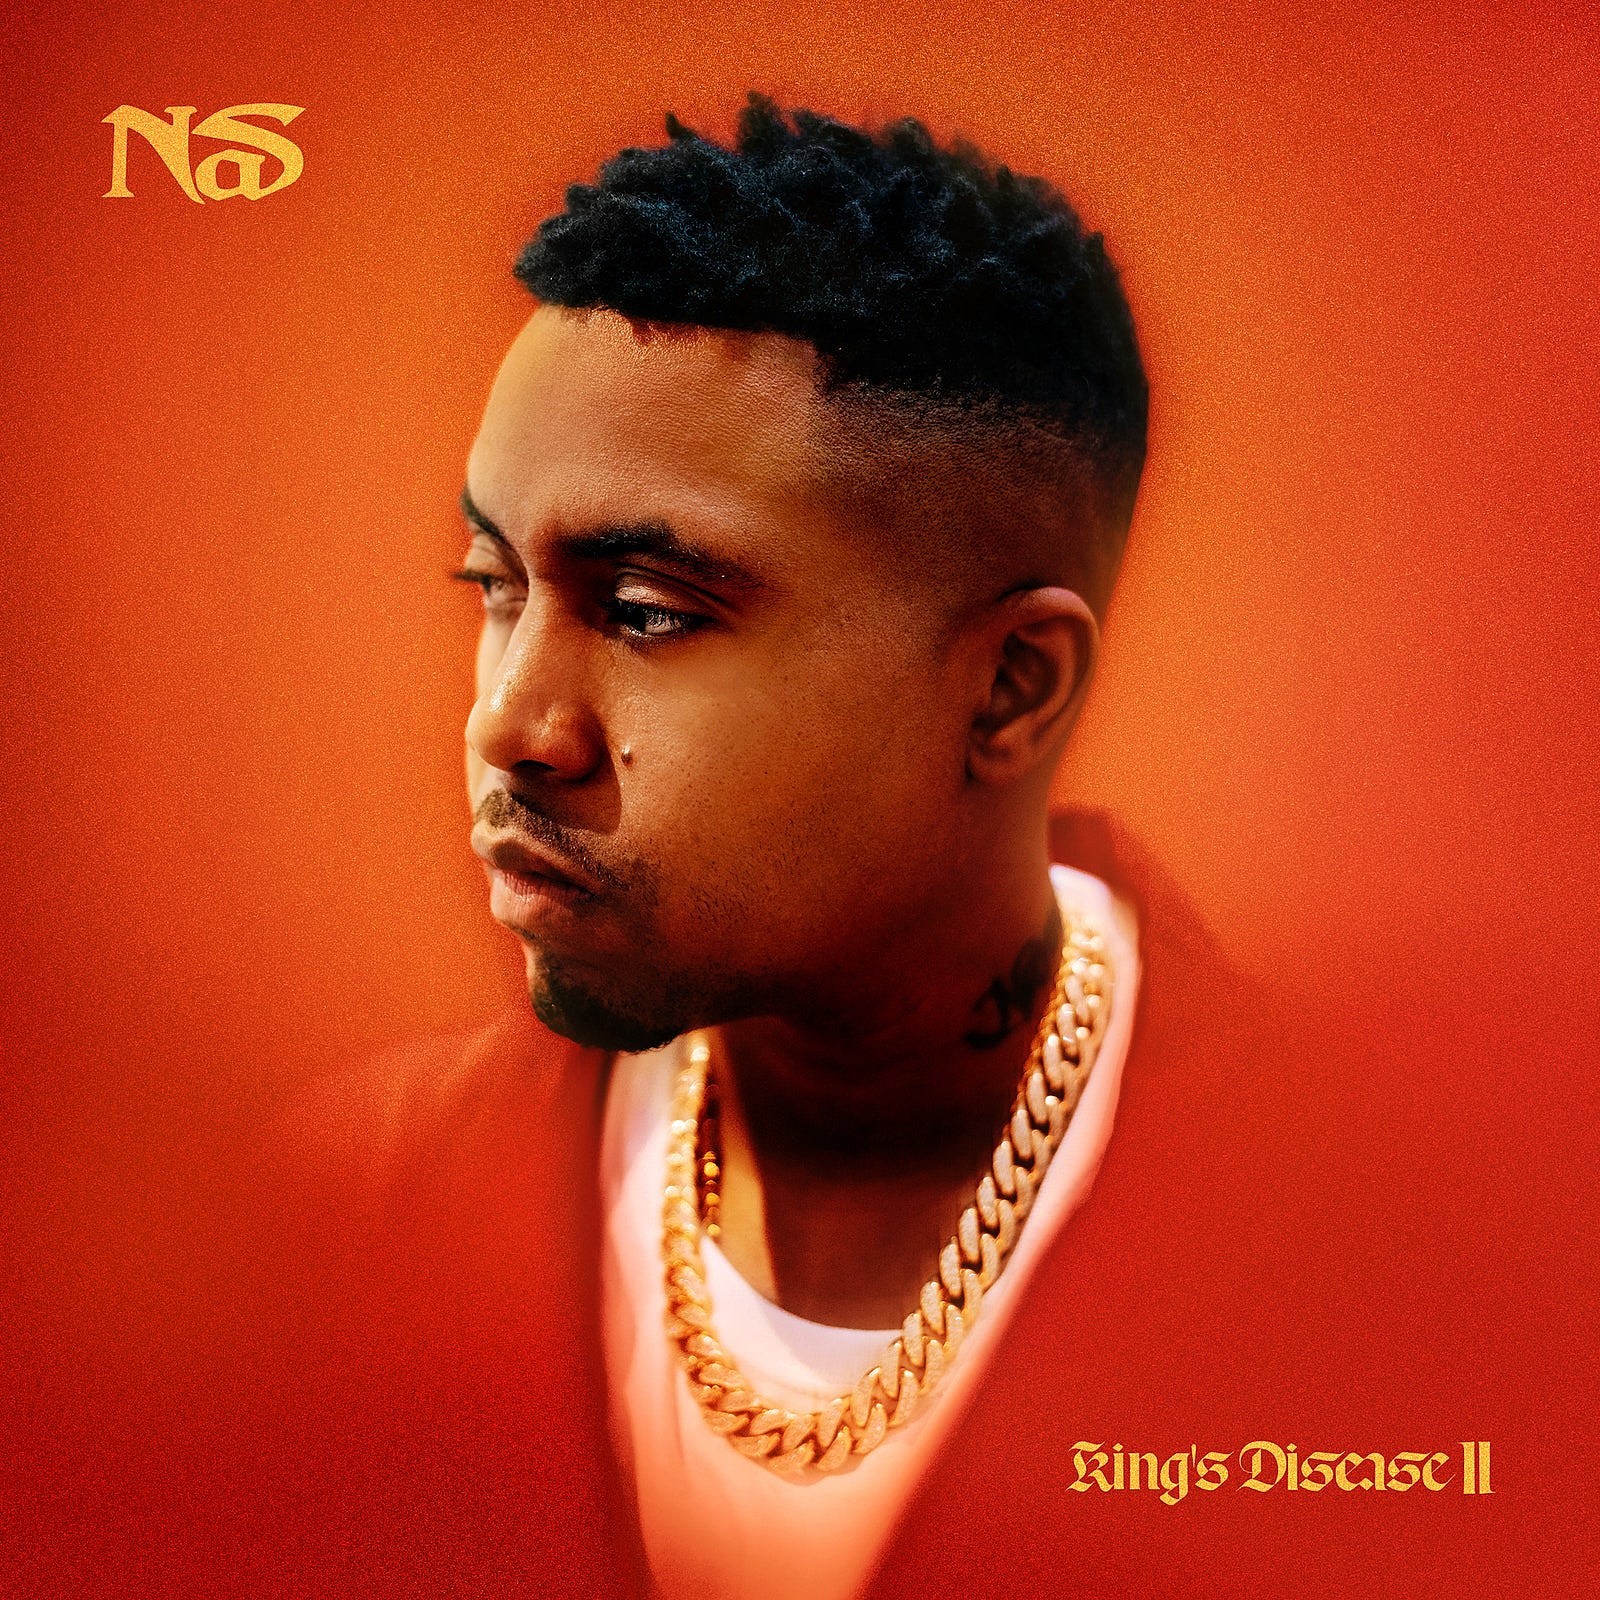 Capa do disco King's Disease II, do rapper Nas.